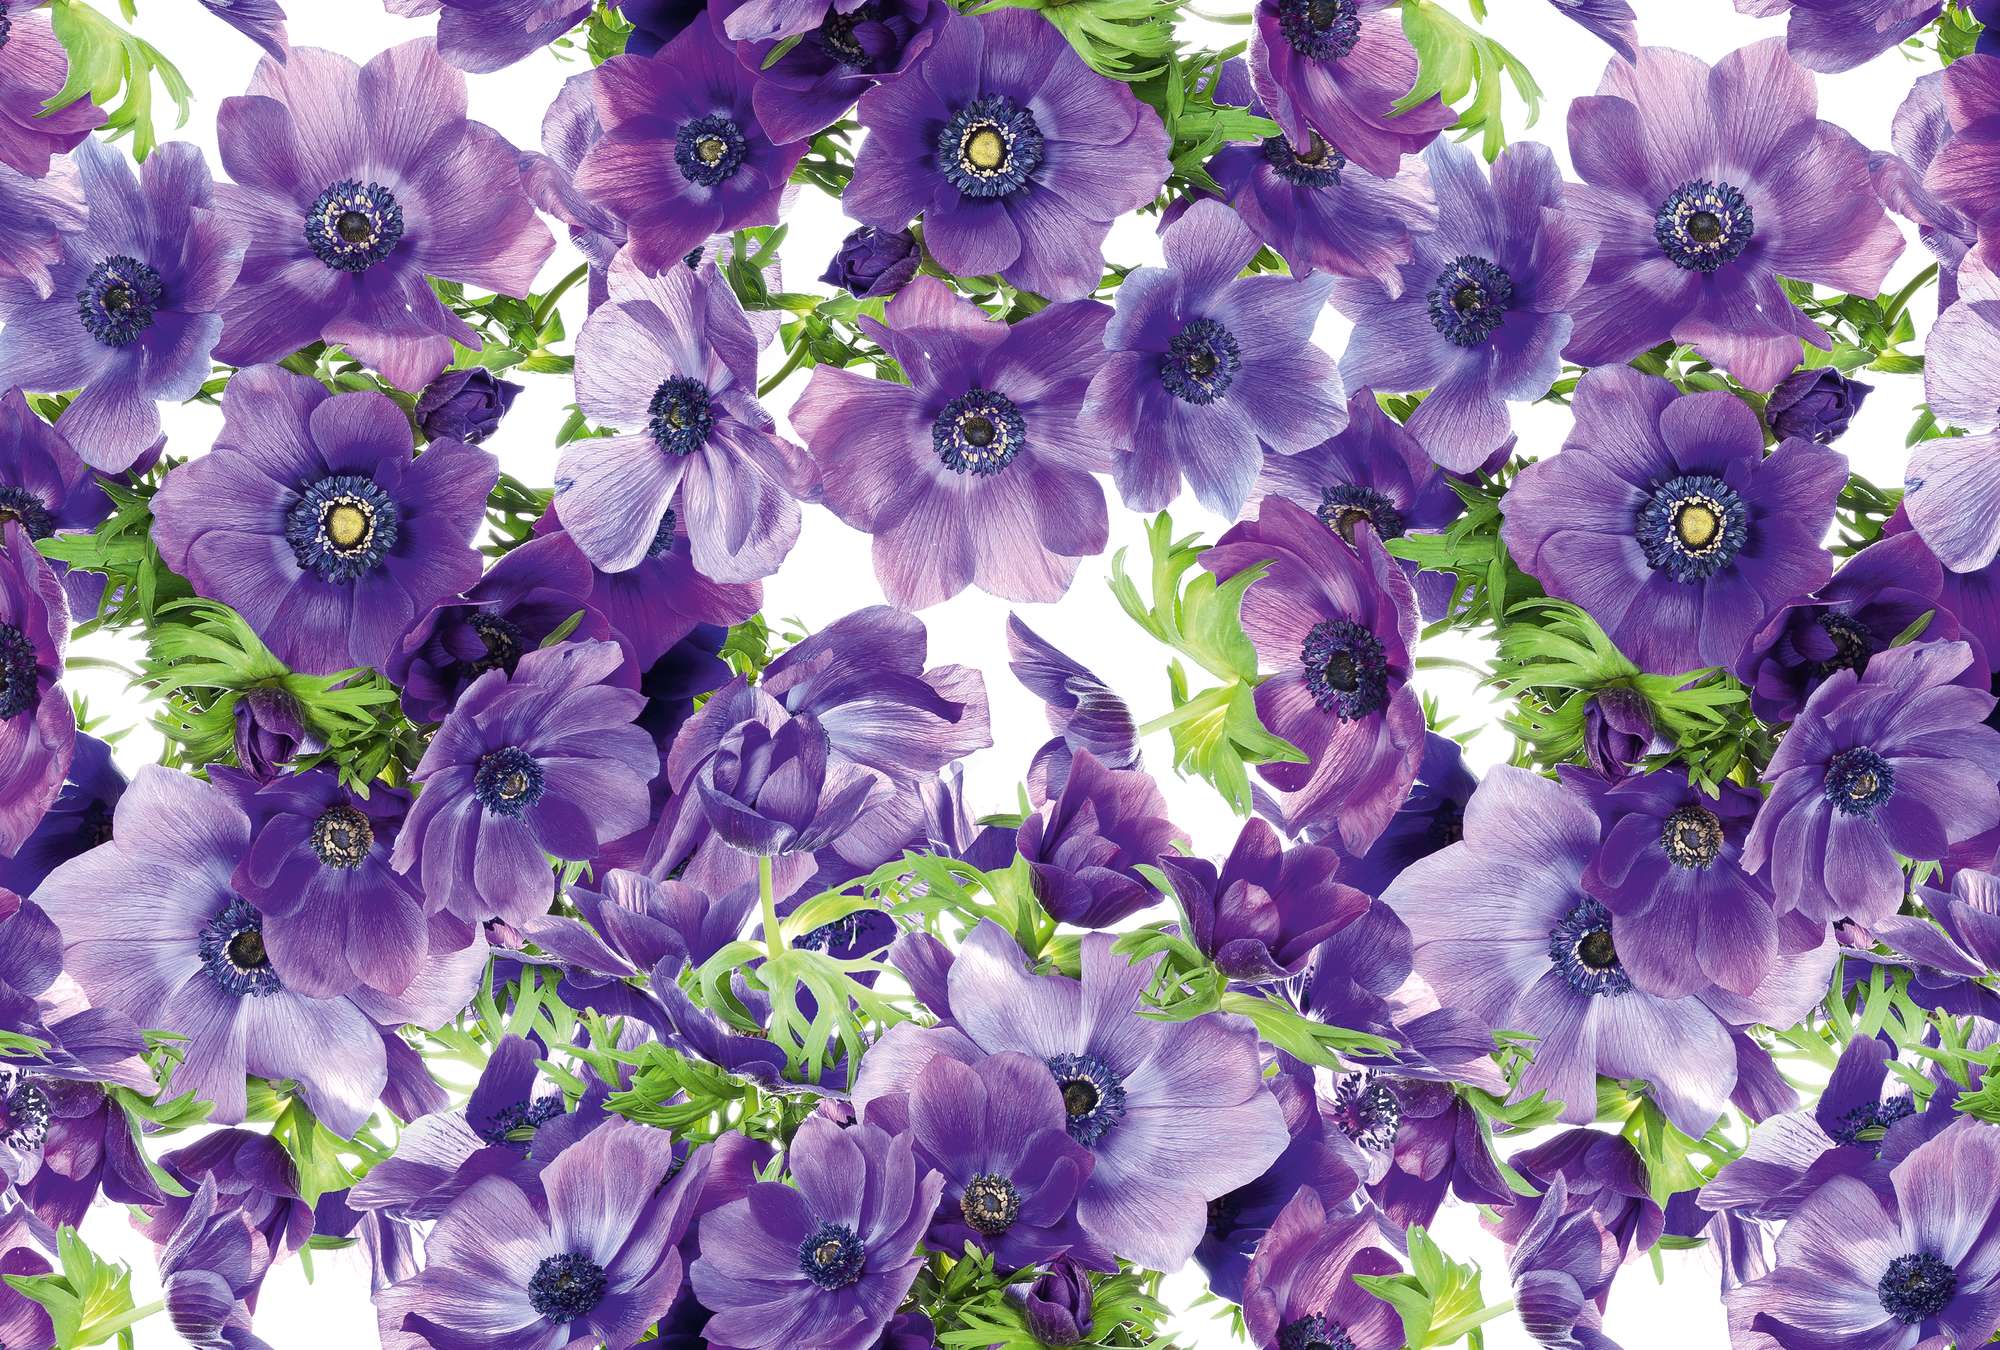             Fototapete Blumen Lila Blüten im XXL Format
        